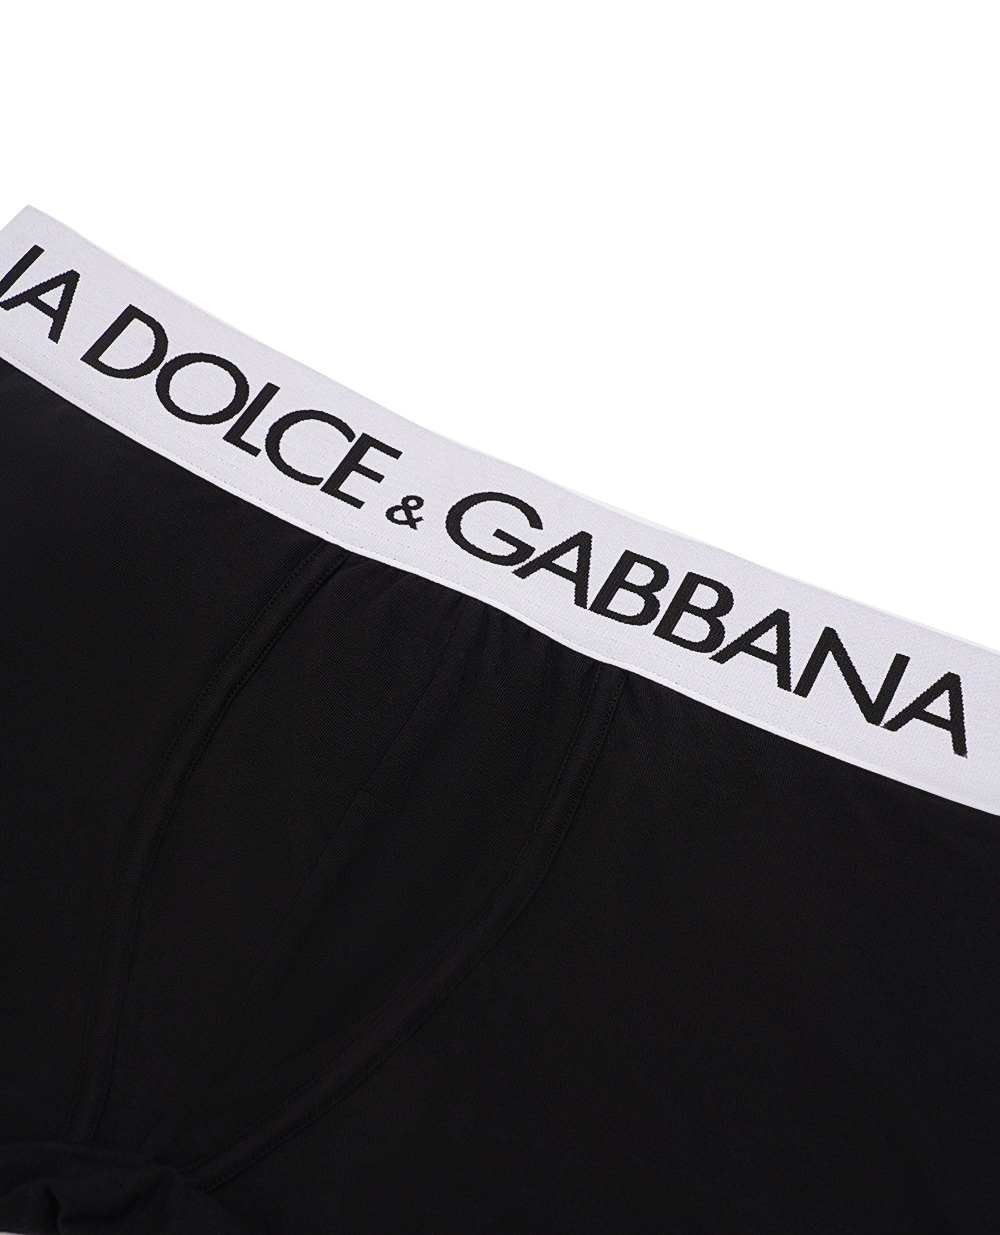 Боксеры Dolce&Gabbana M4B97J-ONN97, черный цвет • Купить в интернет-магазине Kameron